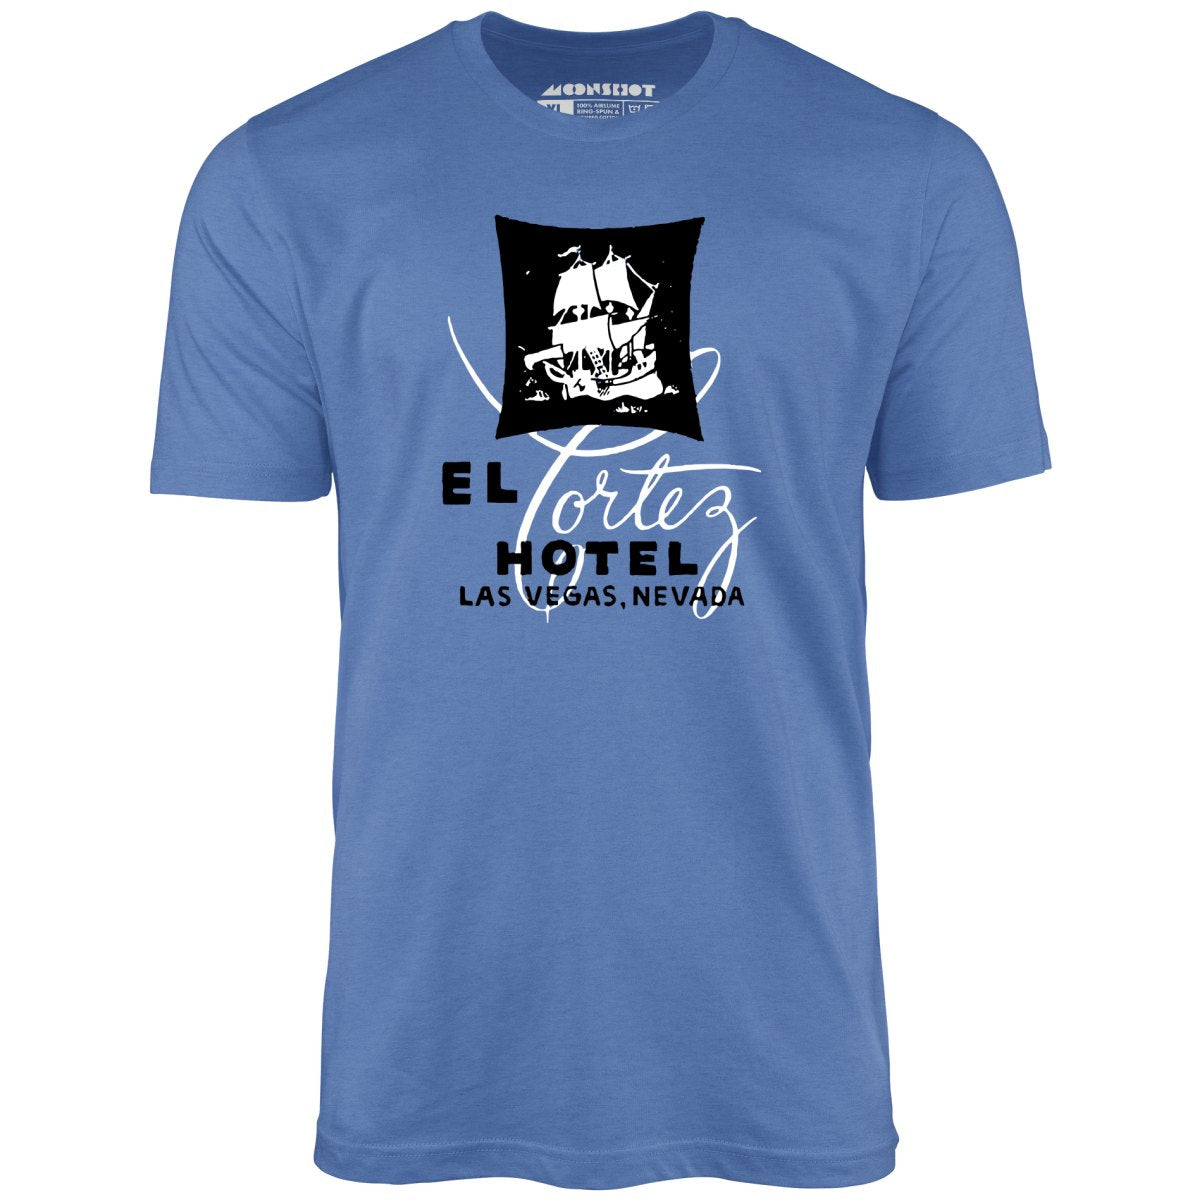 El Cortez Hotel - Vintage Las Vegas - Unisex T-Shirt